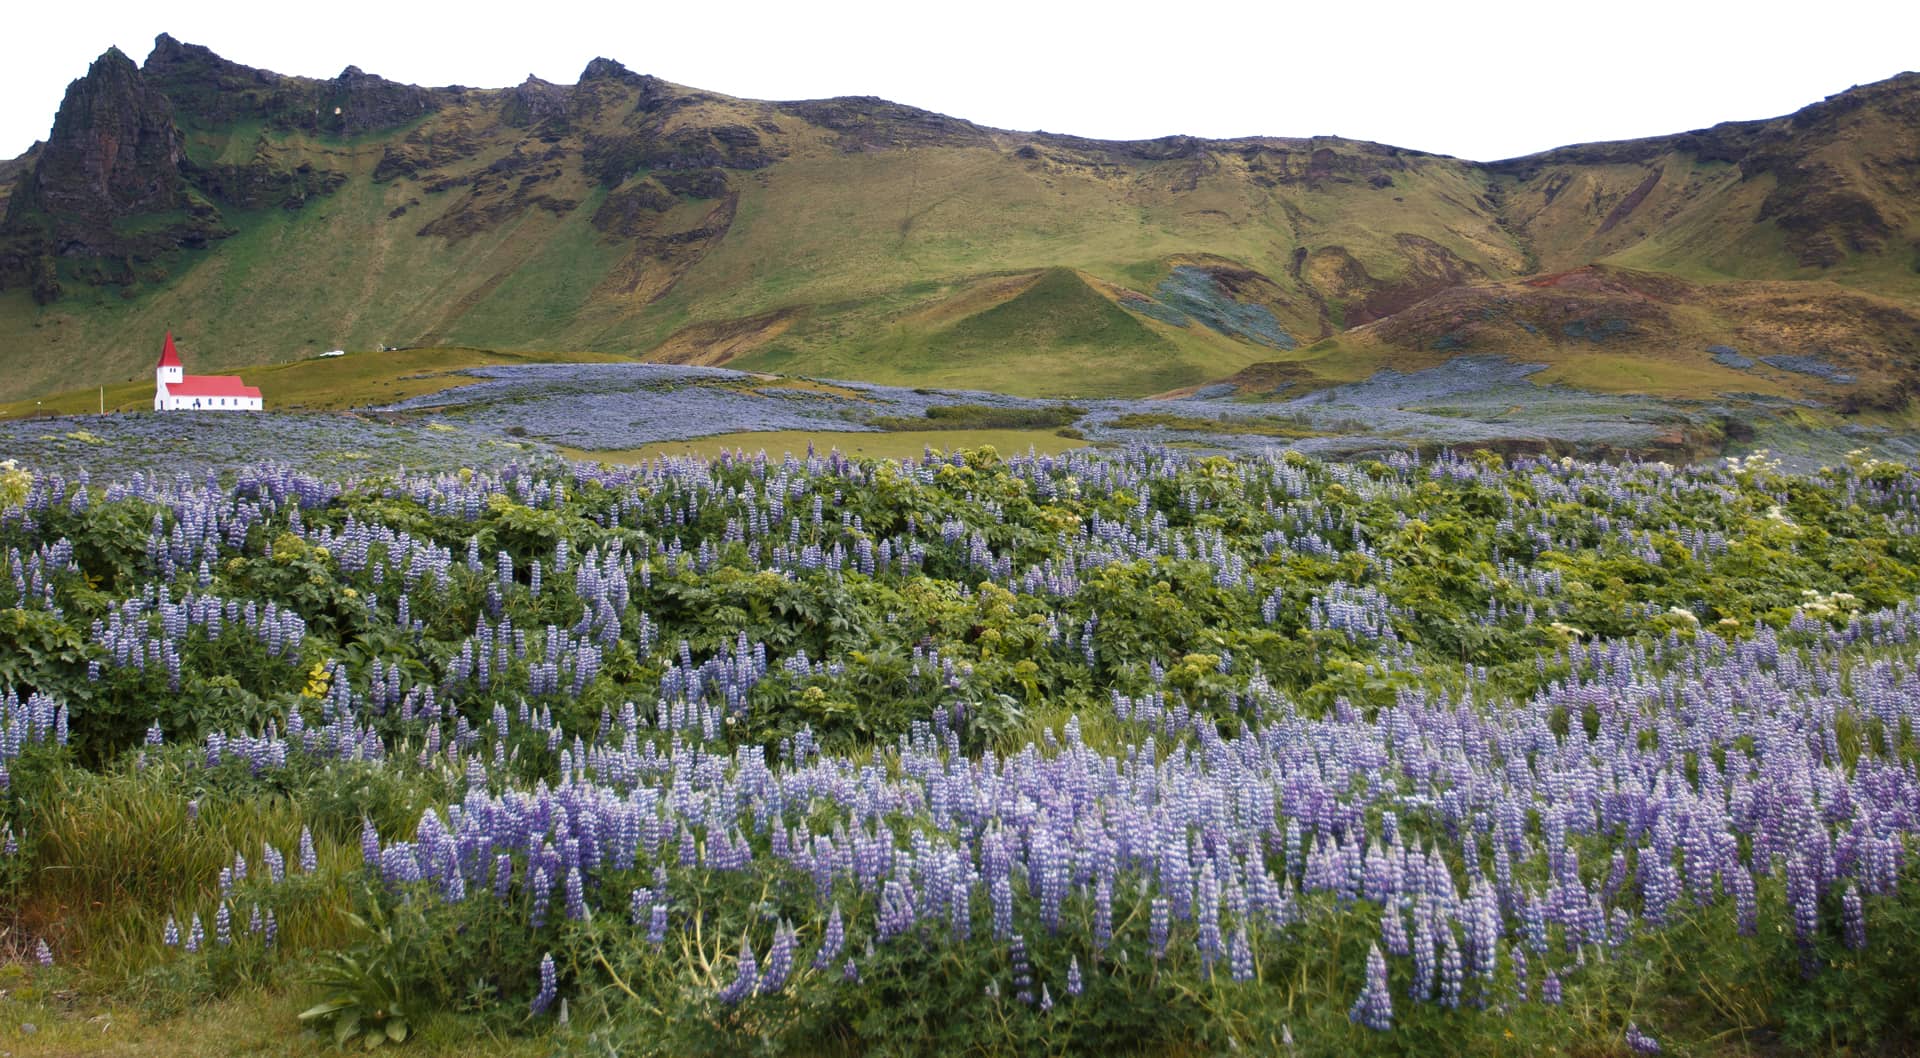 Im Sommer verwandeln endlose Lupinenfelder das südlichste Dorf Islands Vík í Mýrdal in ein blau-violettes Blütenmeer